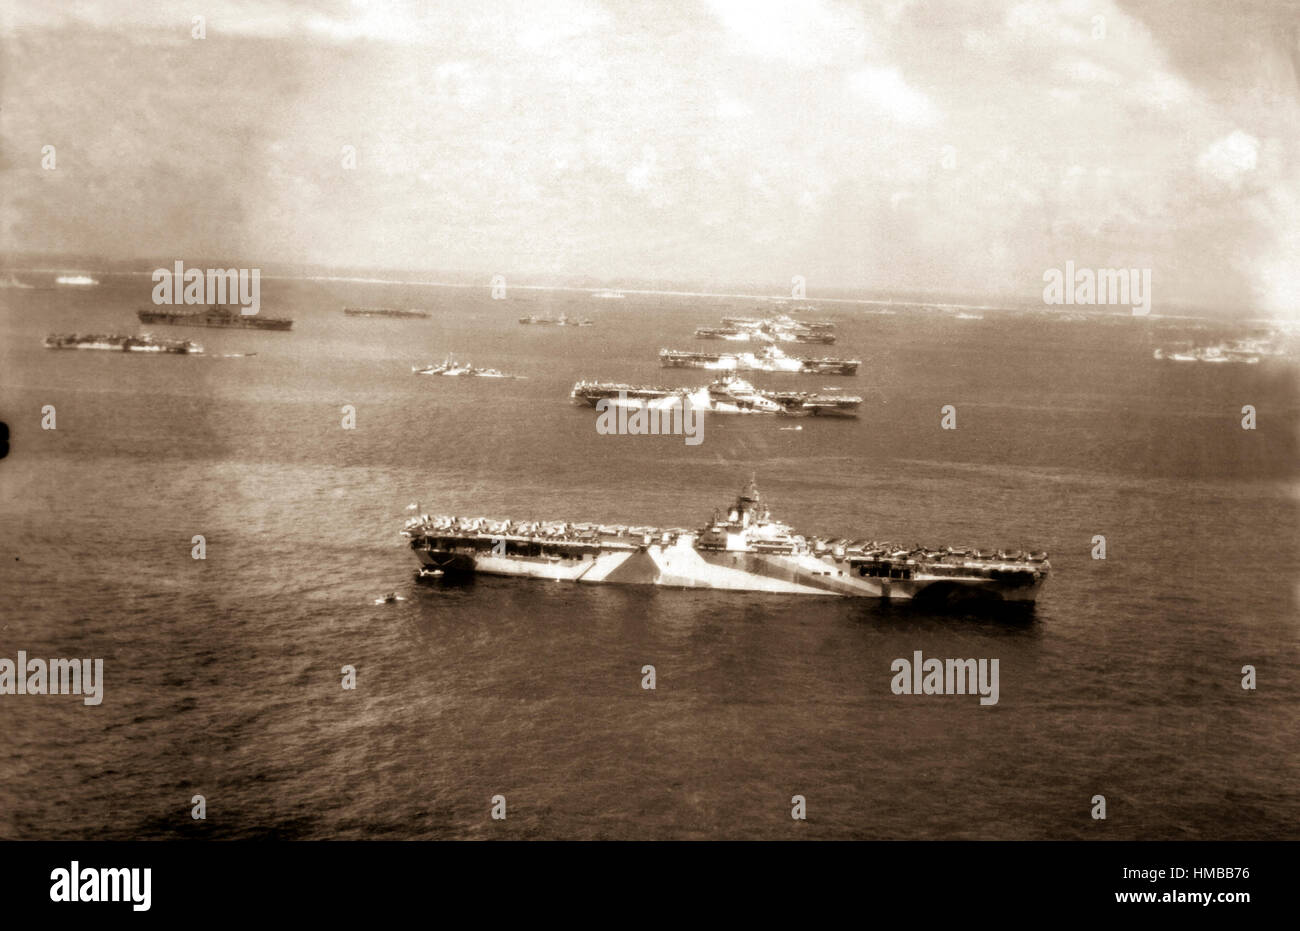 Schiffe der Kämpfe Flotte im Ulithi-Atoll, Vordergrund, Hintergrund: USS WASP, USS YORKTOWN, USS LEXINGTON, USS HORNET, USS HANCOCK, USS TICONDEROGA.  Dezember 1944. (Marine) Genaues Datum erschossen unbekannte NARA Datei #: 080-G-294131 Krieg & Konflikt buchen #: 1201 Stockfoto